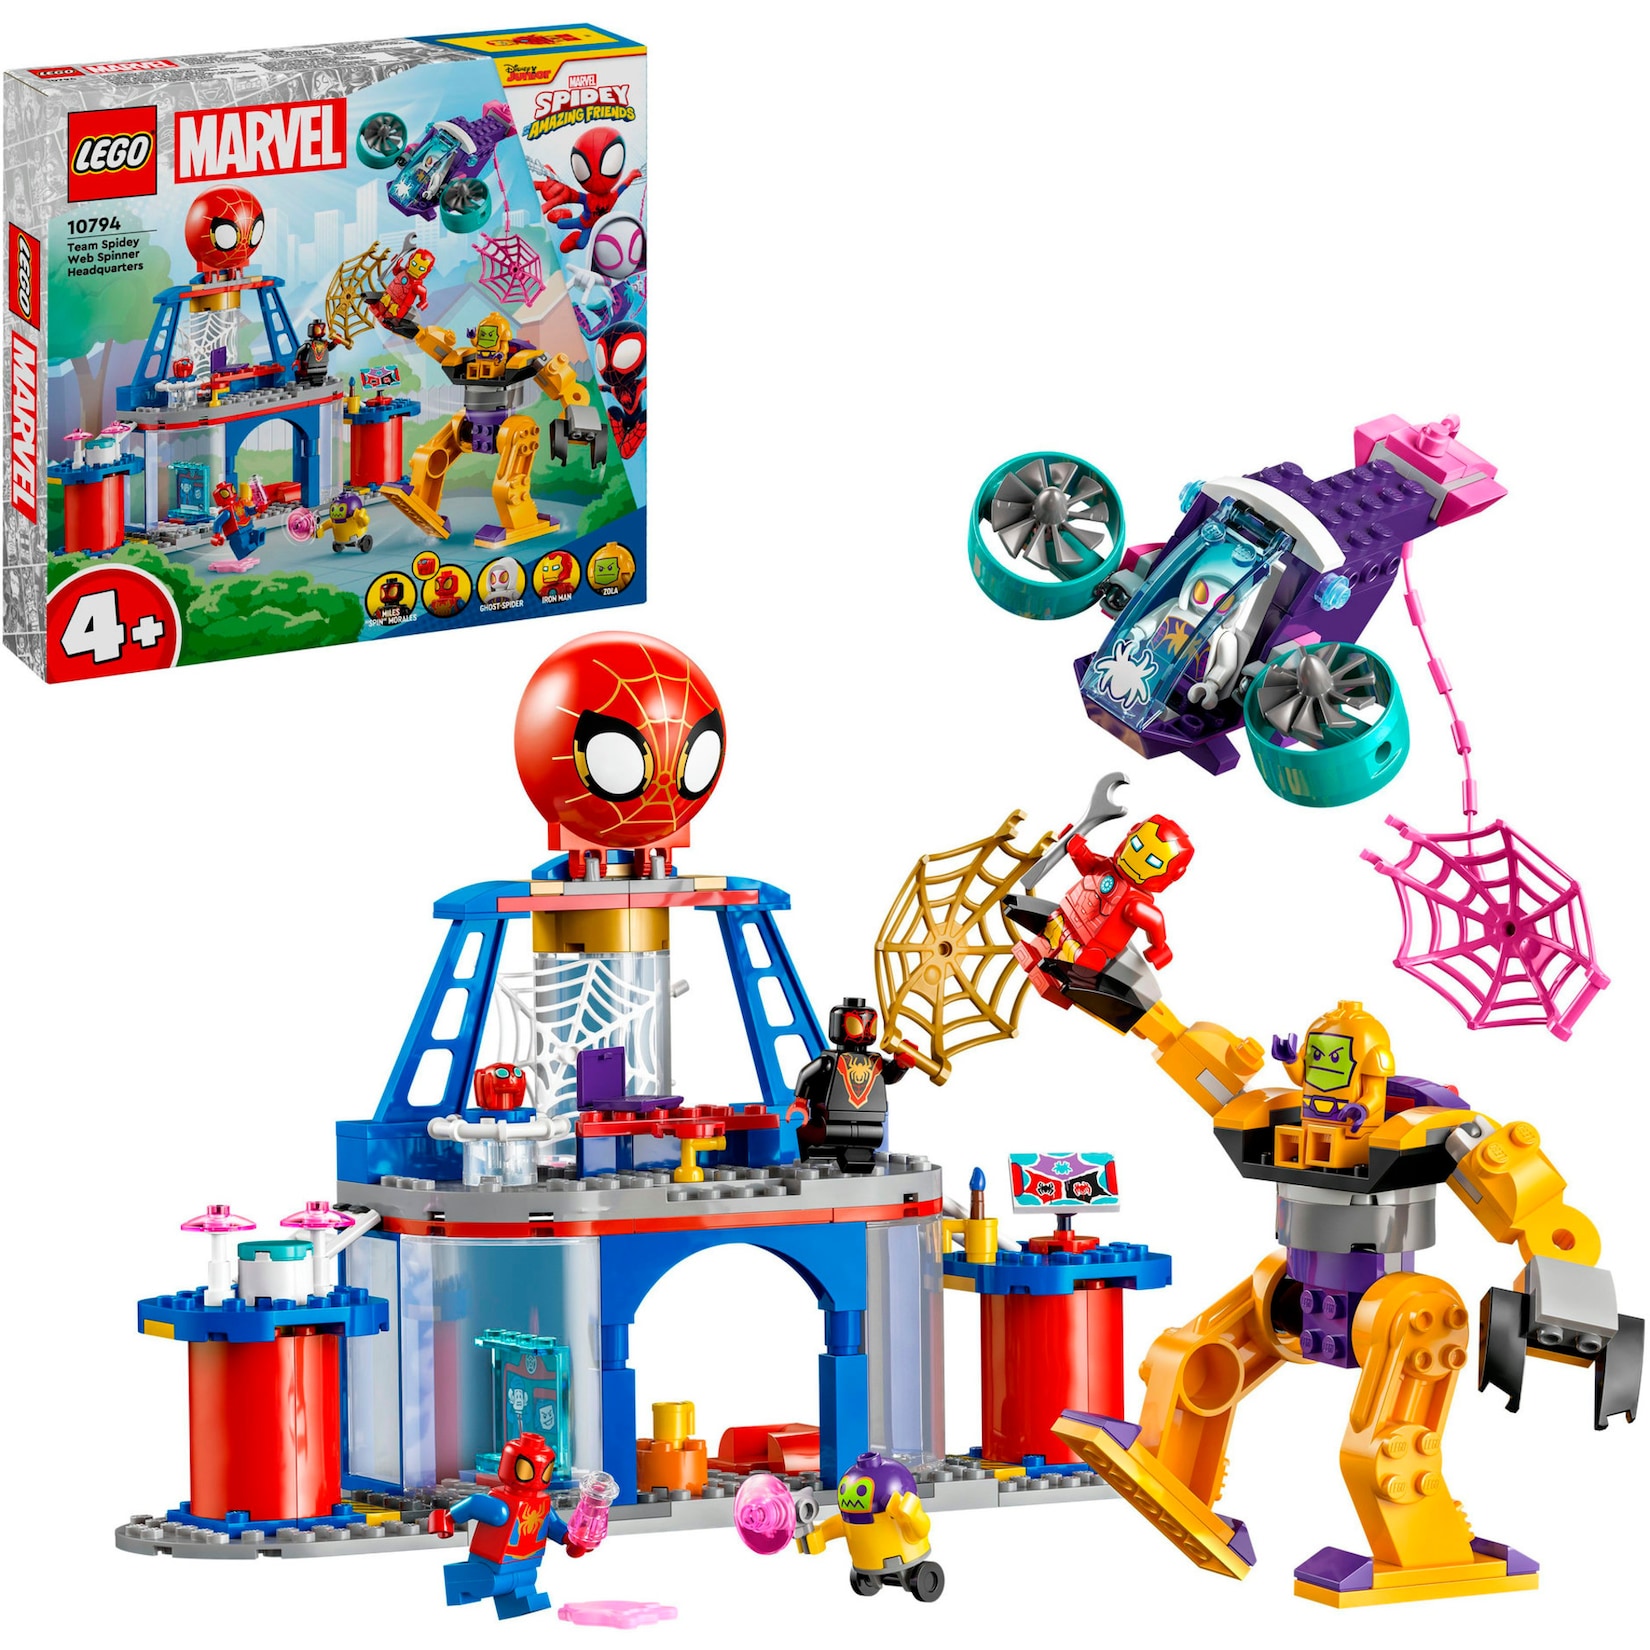 LEGO Konstruktionsspielzeug Marvel Spidey und seine Super-Freunde Das Hauptquartier von Spideys Team